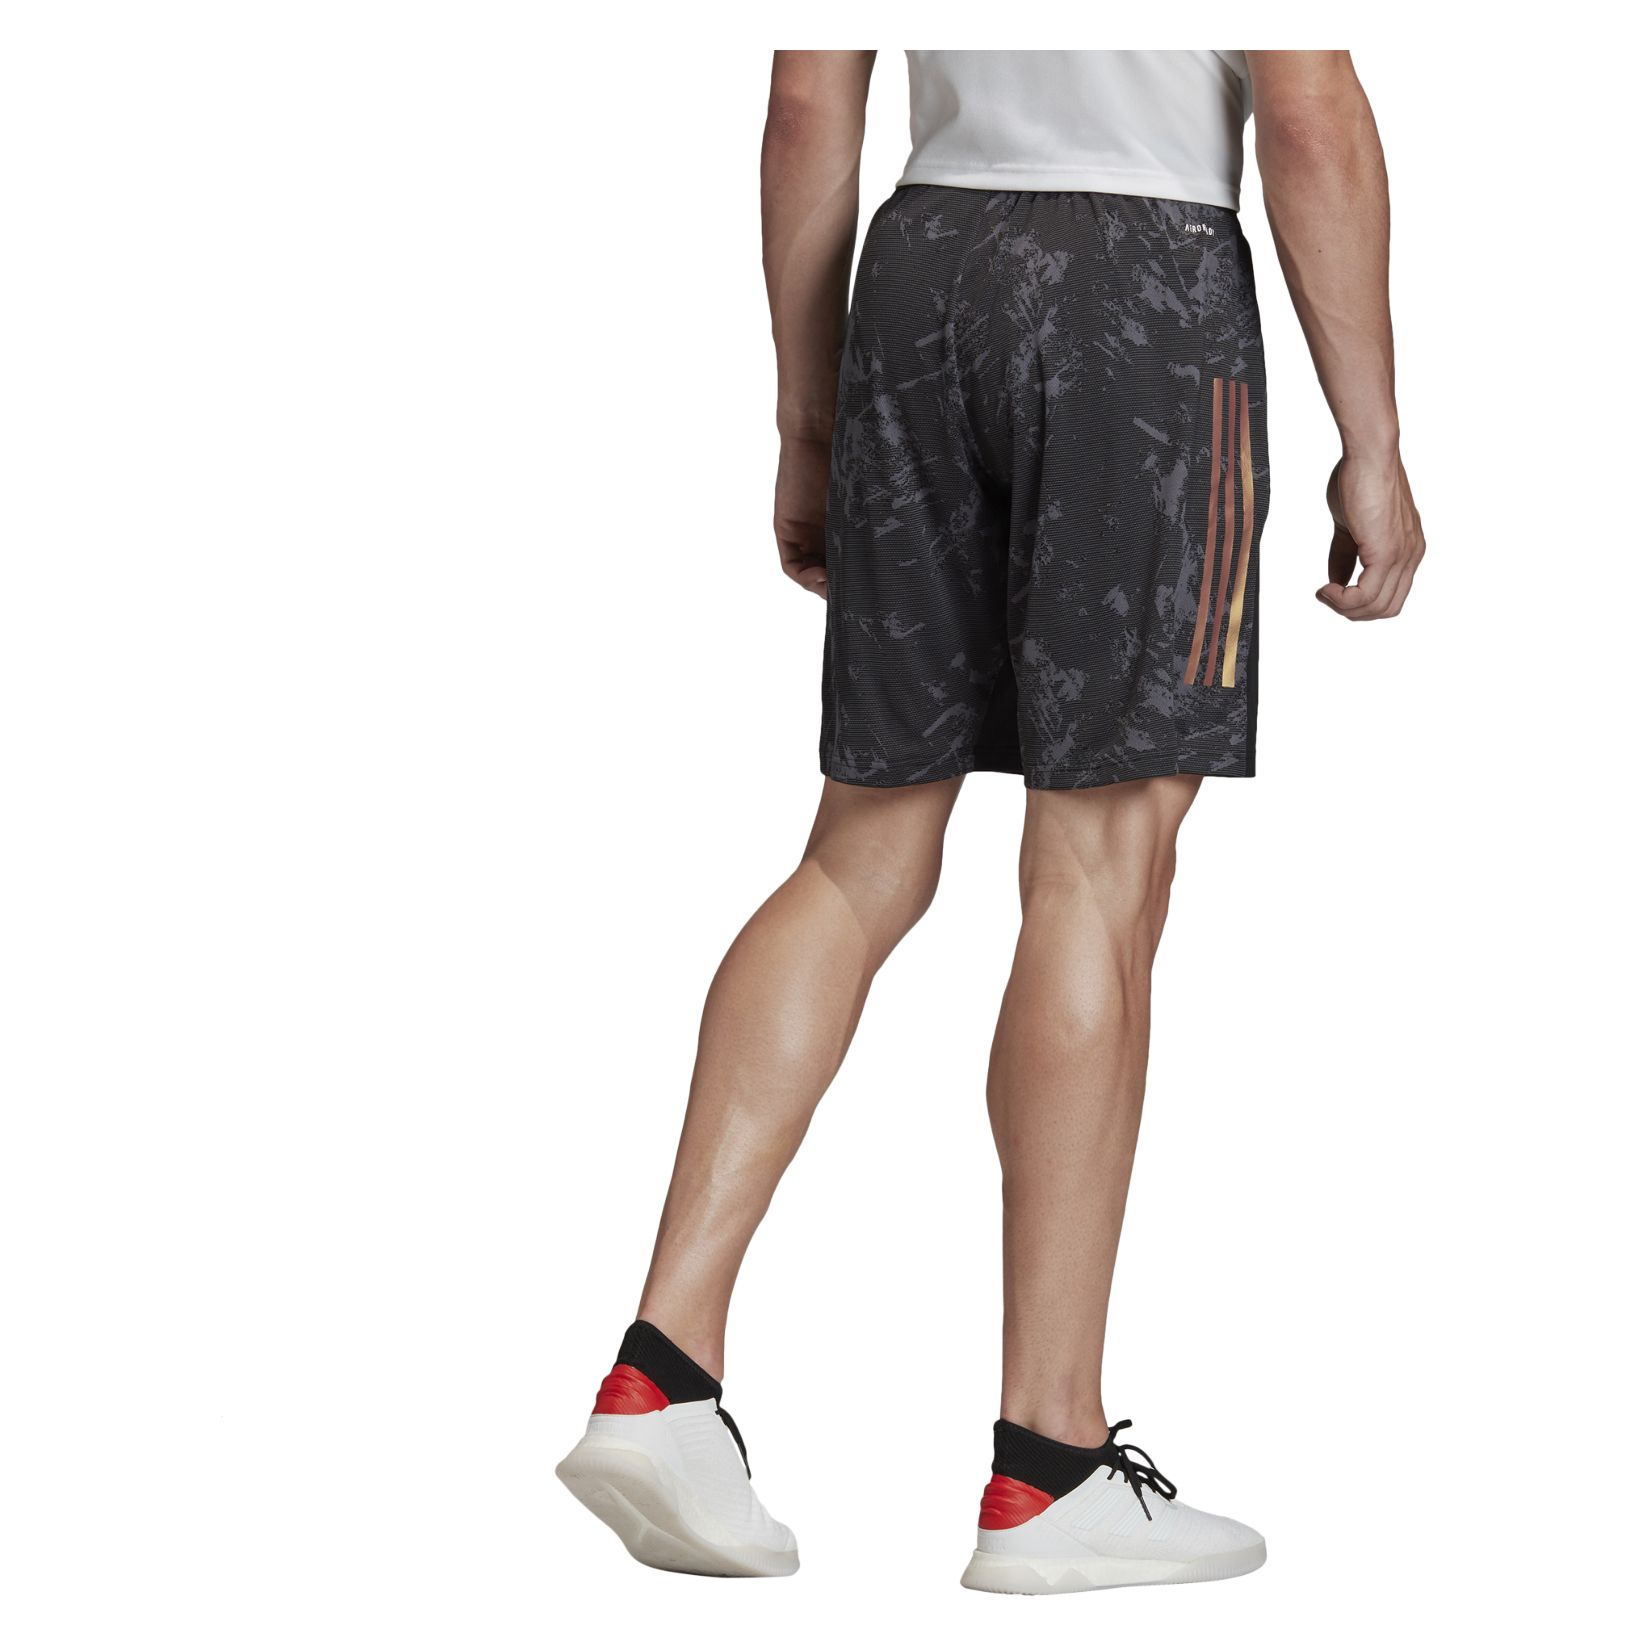 adidas shorts logo on back